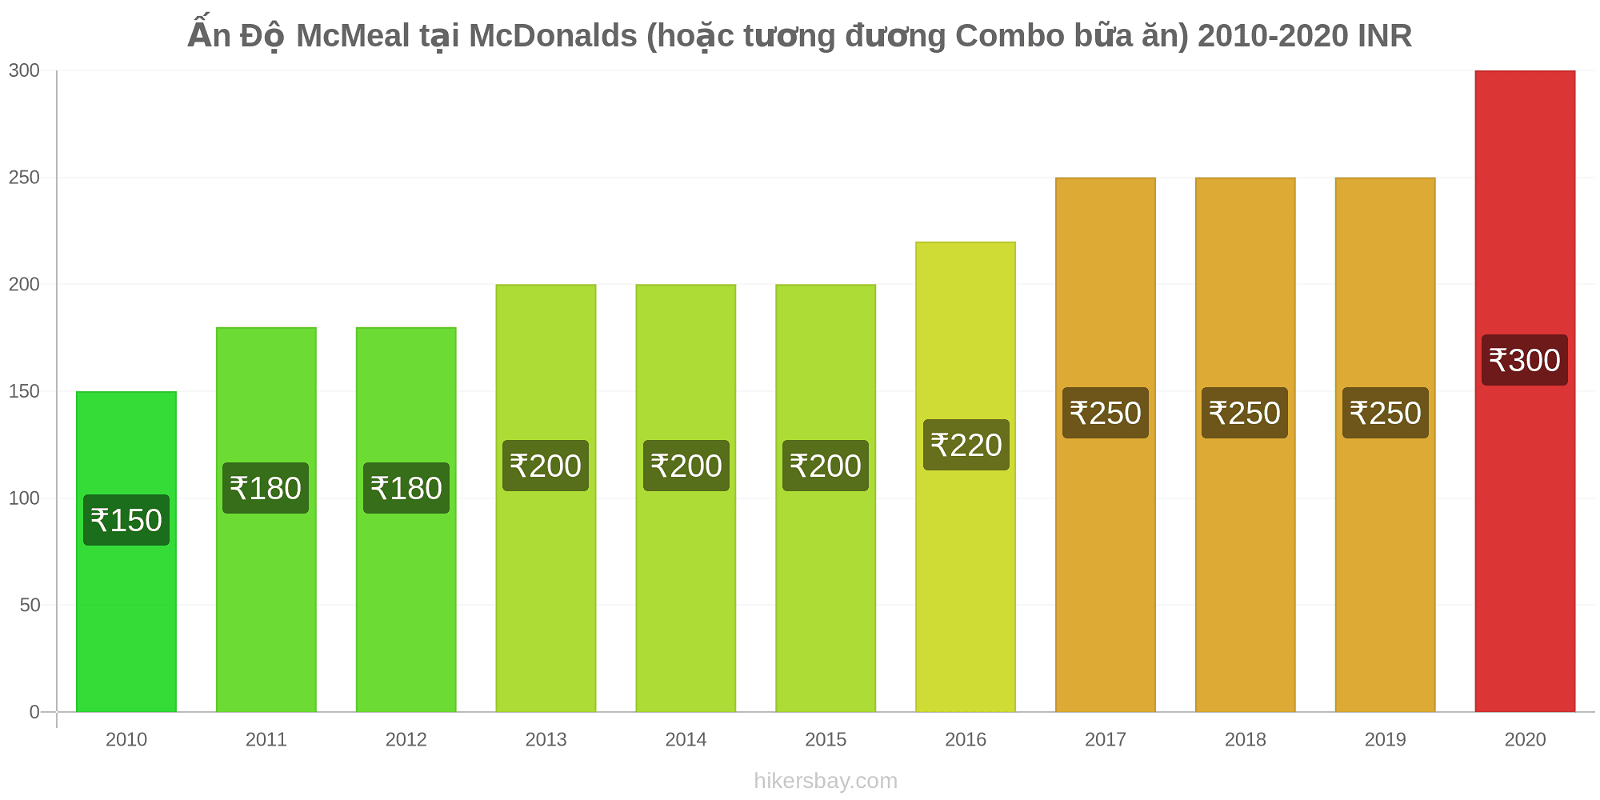 Ấn Độ thay đổi giá McMeal tại McDonalds (hoặc tương đương Combo bữa ăn) hikersbay.com